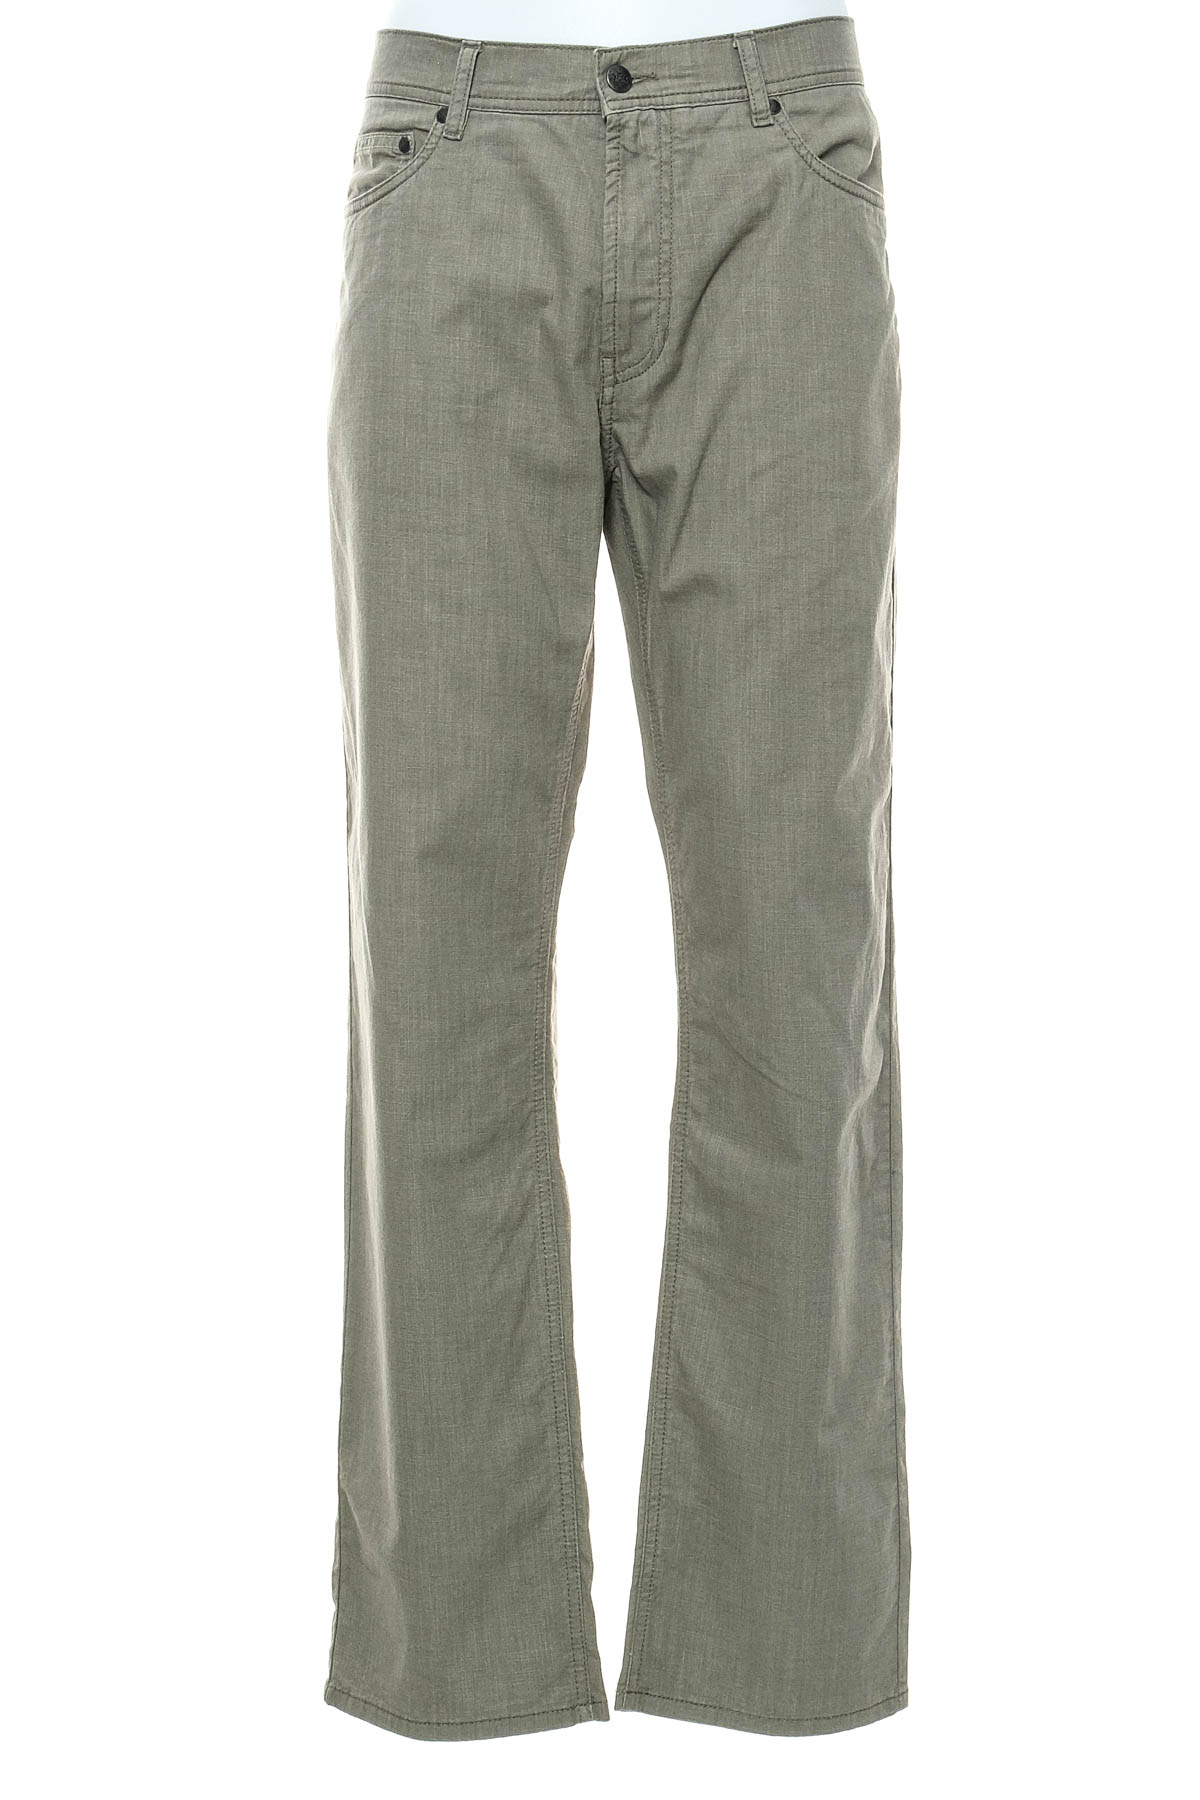 Pantalon pentru bărbați - Walbusch - 0